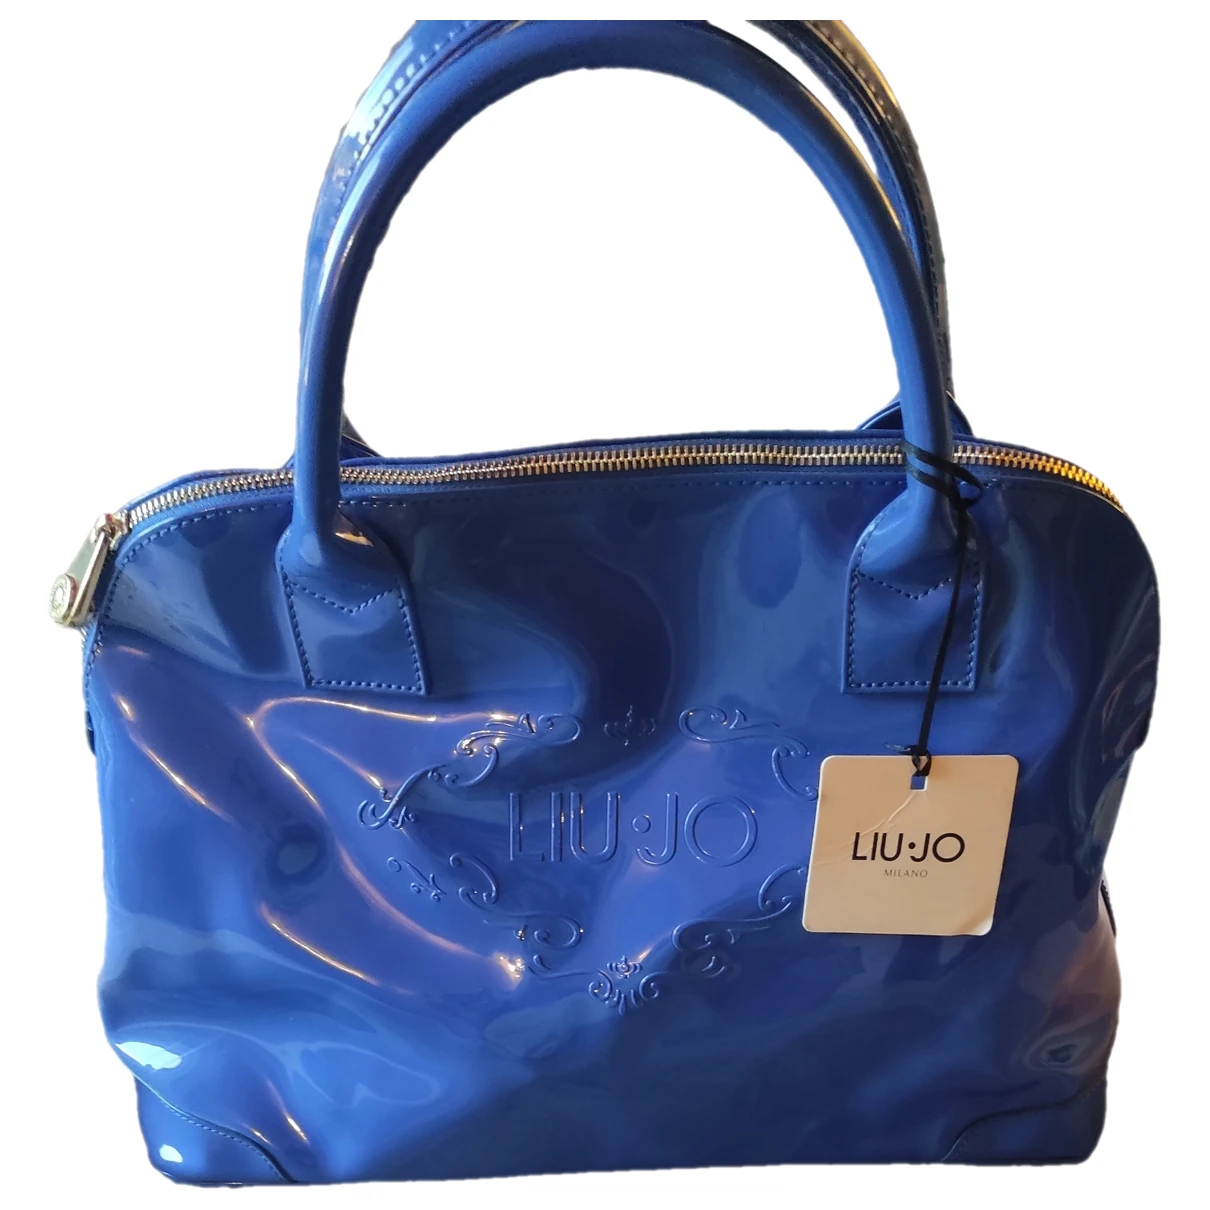 Pre-owned Liujo Vegan Leather Handbag In Blue